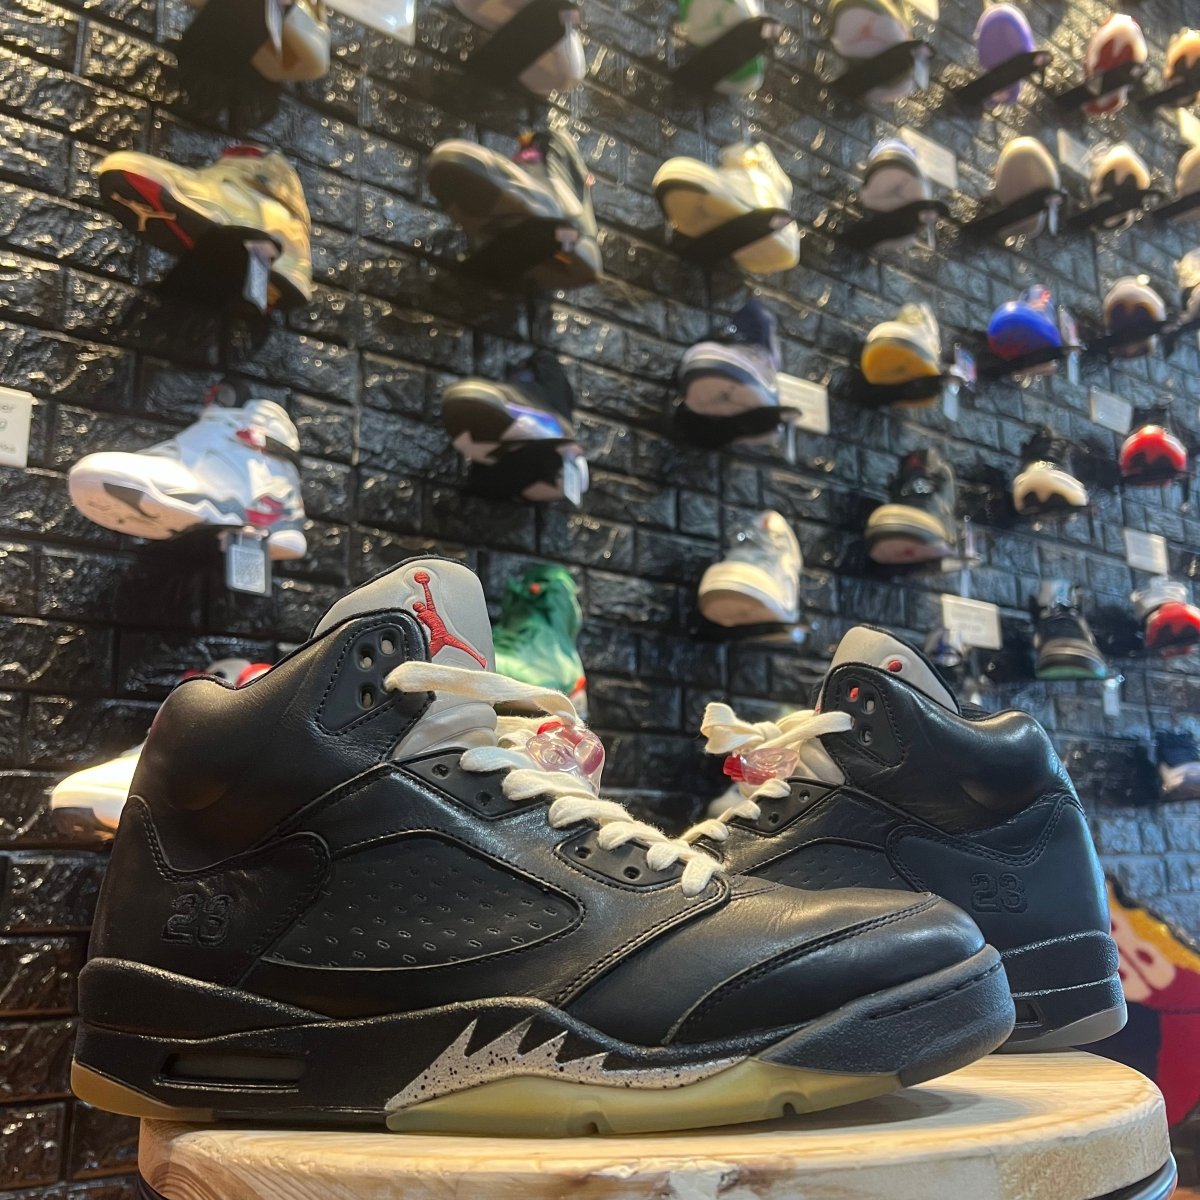 Air Jordan 5 Retro Premio 'Bin23' - Gently Enjoyed (Used) Men 10.5 - Damaged Box - Mid Sneaker - Jawns on Fire Sneakers & Streetwear